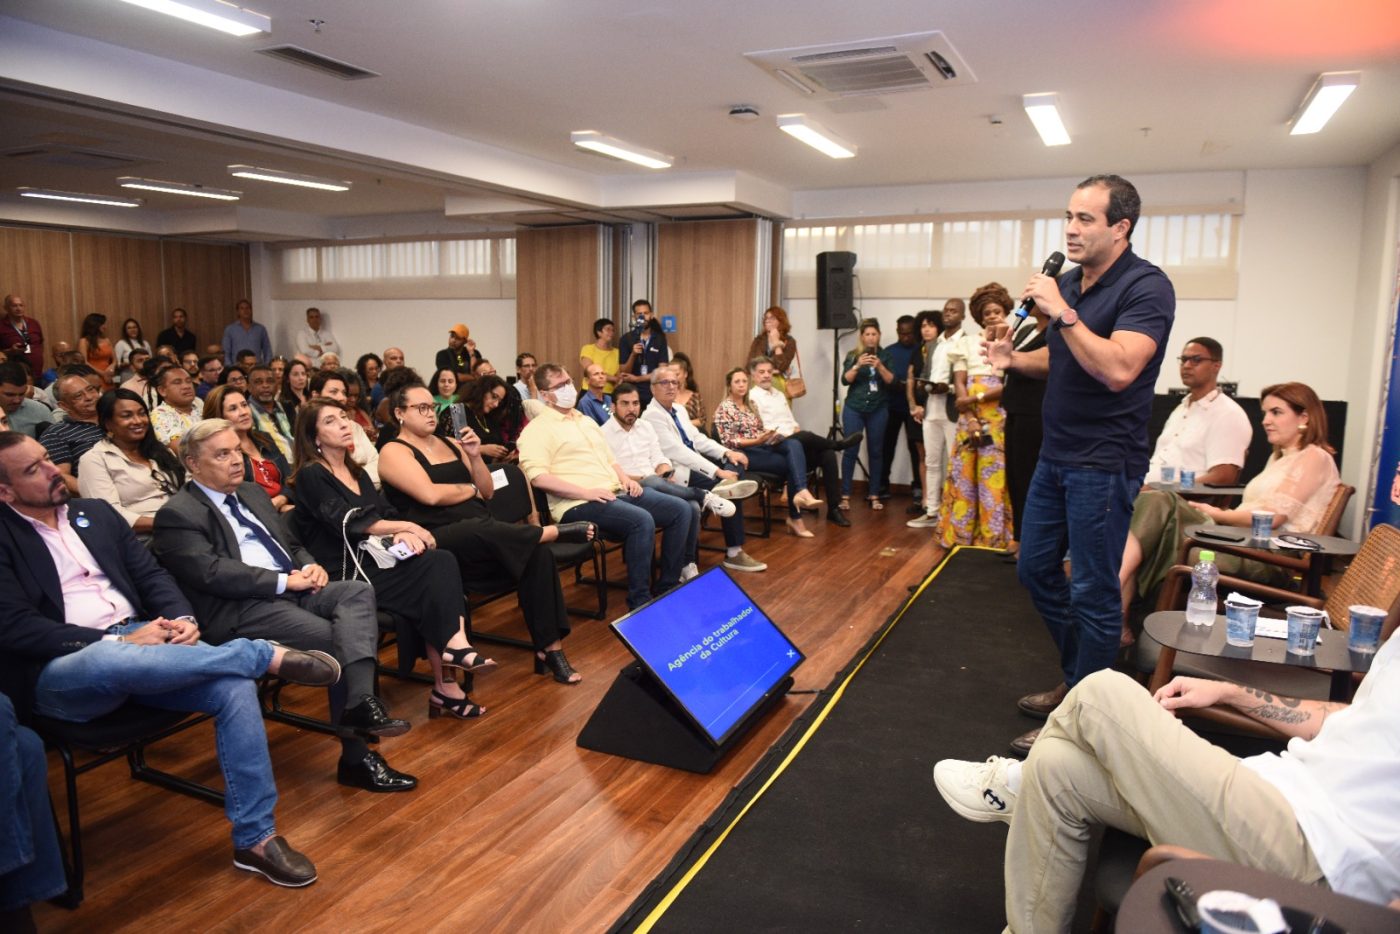 Trabalhadores da cultura ganham agência para fortalecer economia criativa em Salvador